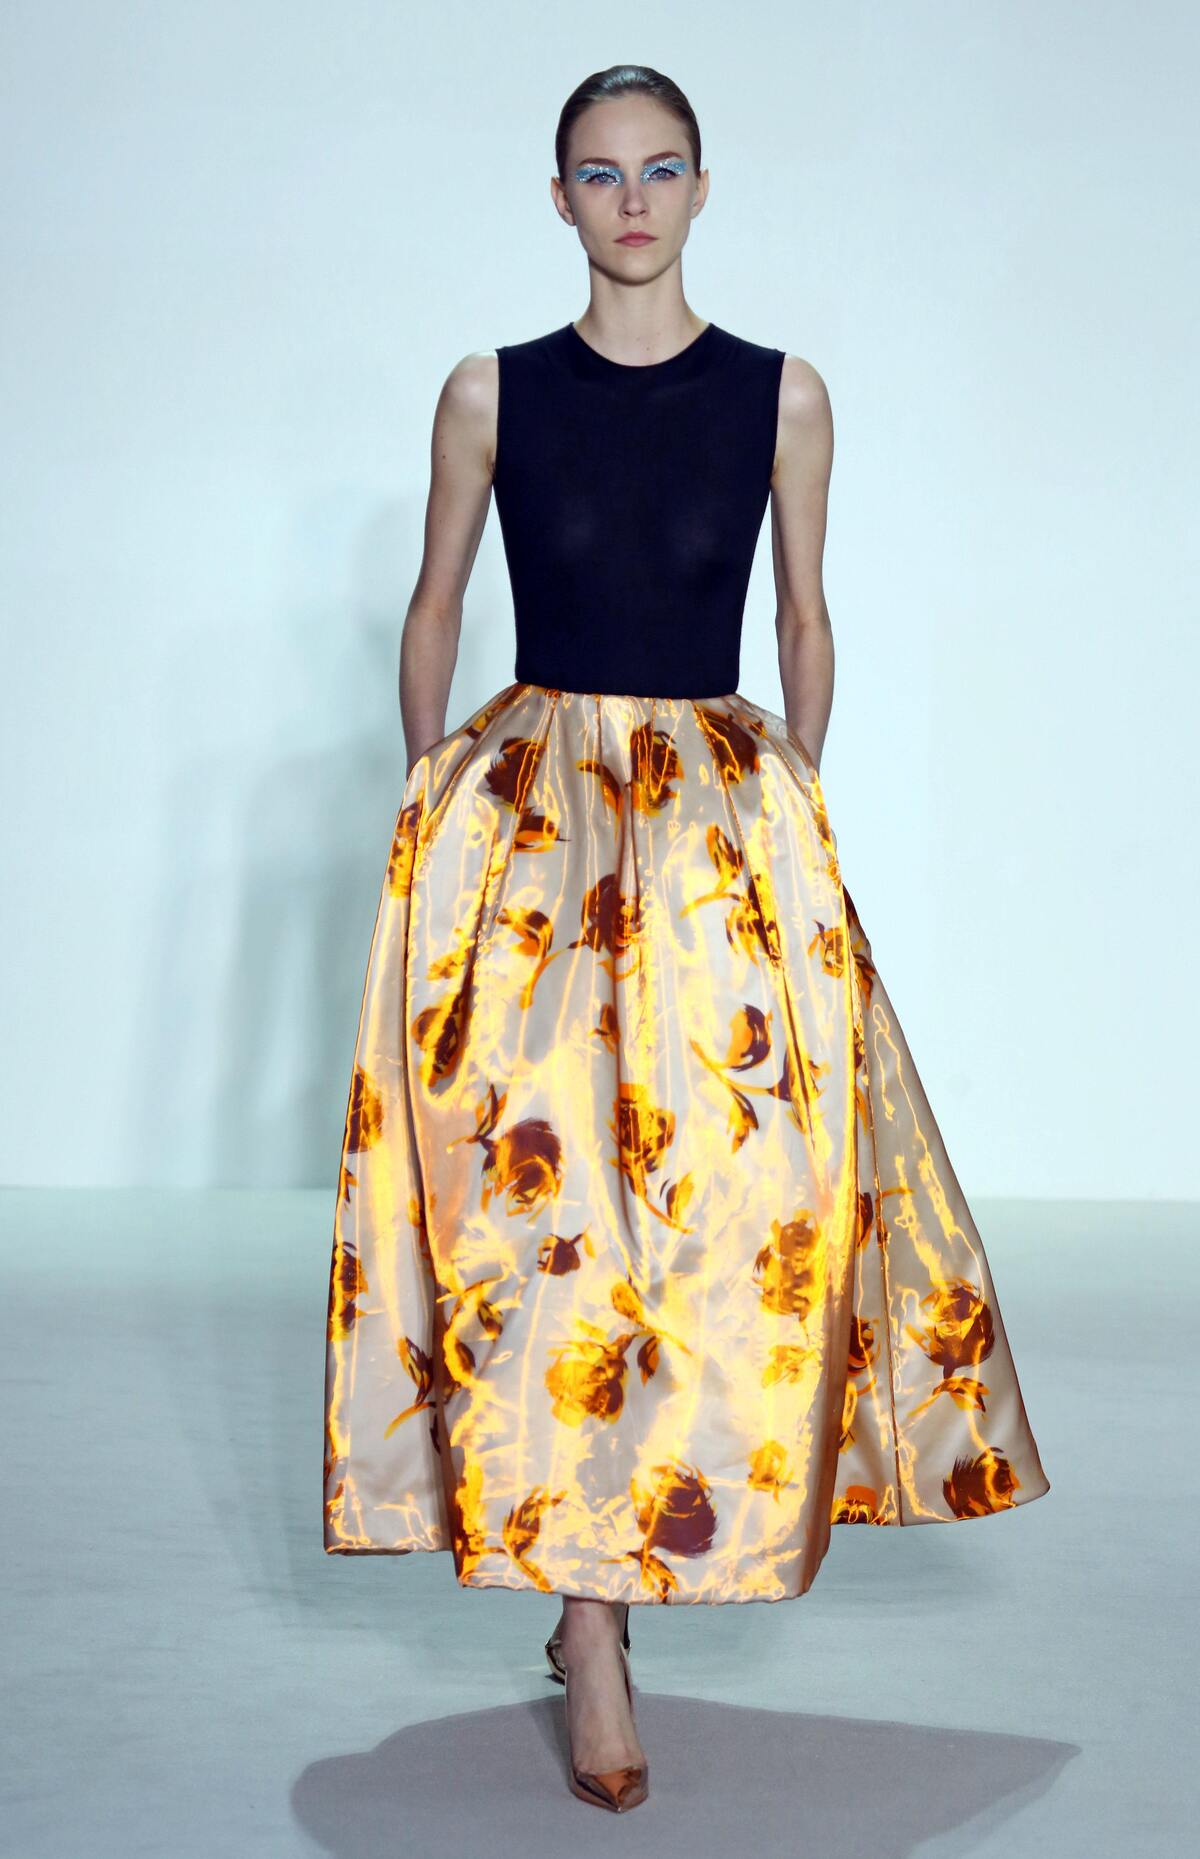 Модный показ Christian Dior. Весна / лето 2013